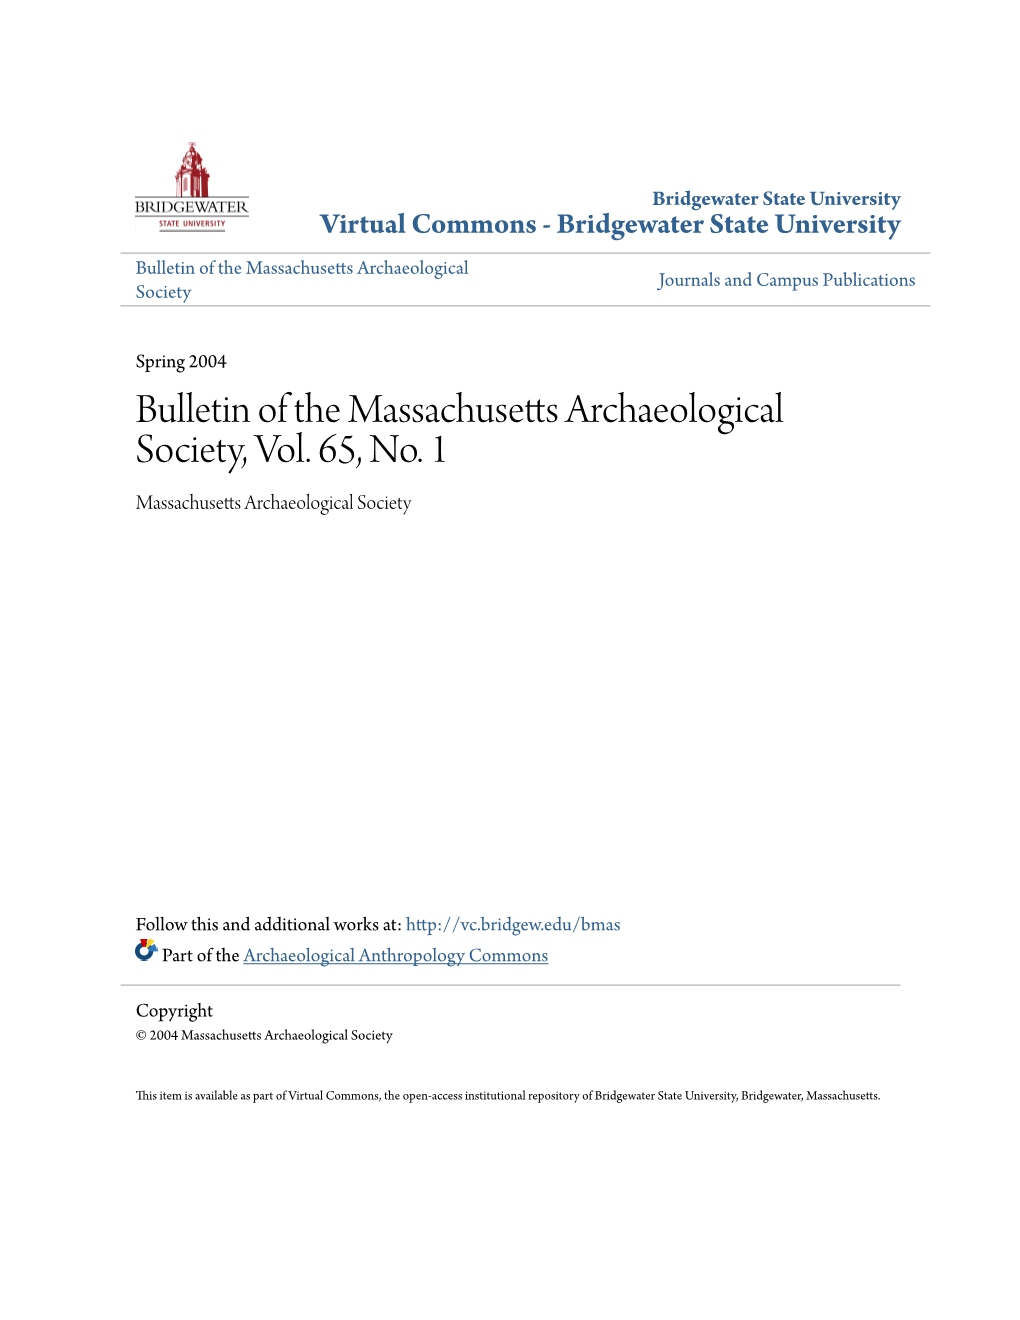 Bulletin of the Massachusetts Archaeological Society, Vol. 65, No. 1 Massachusetts Archaeological Society